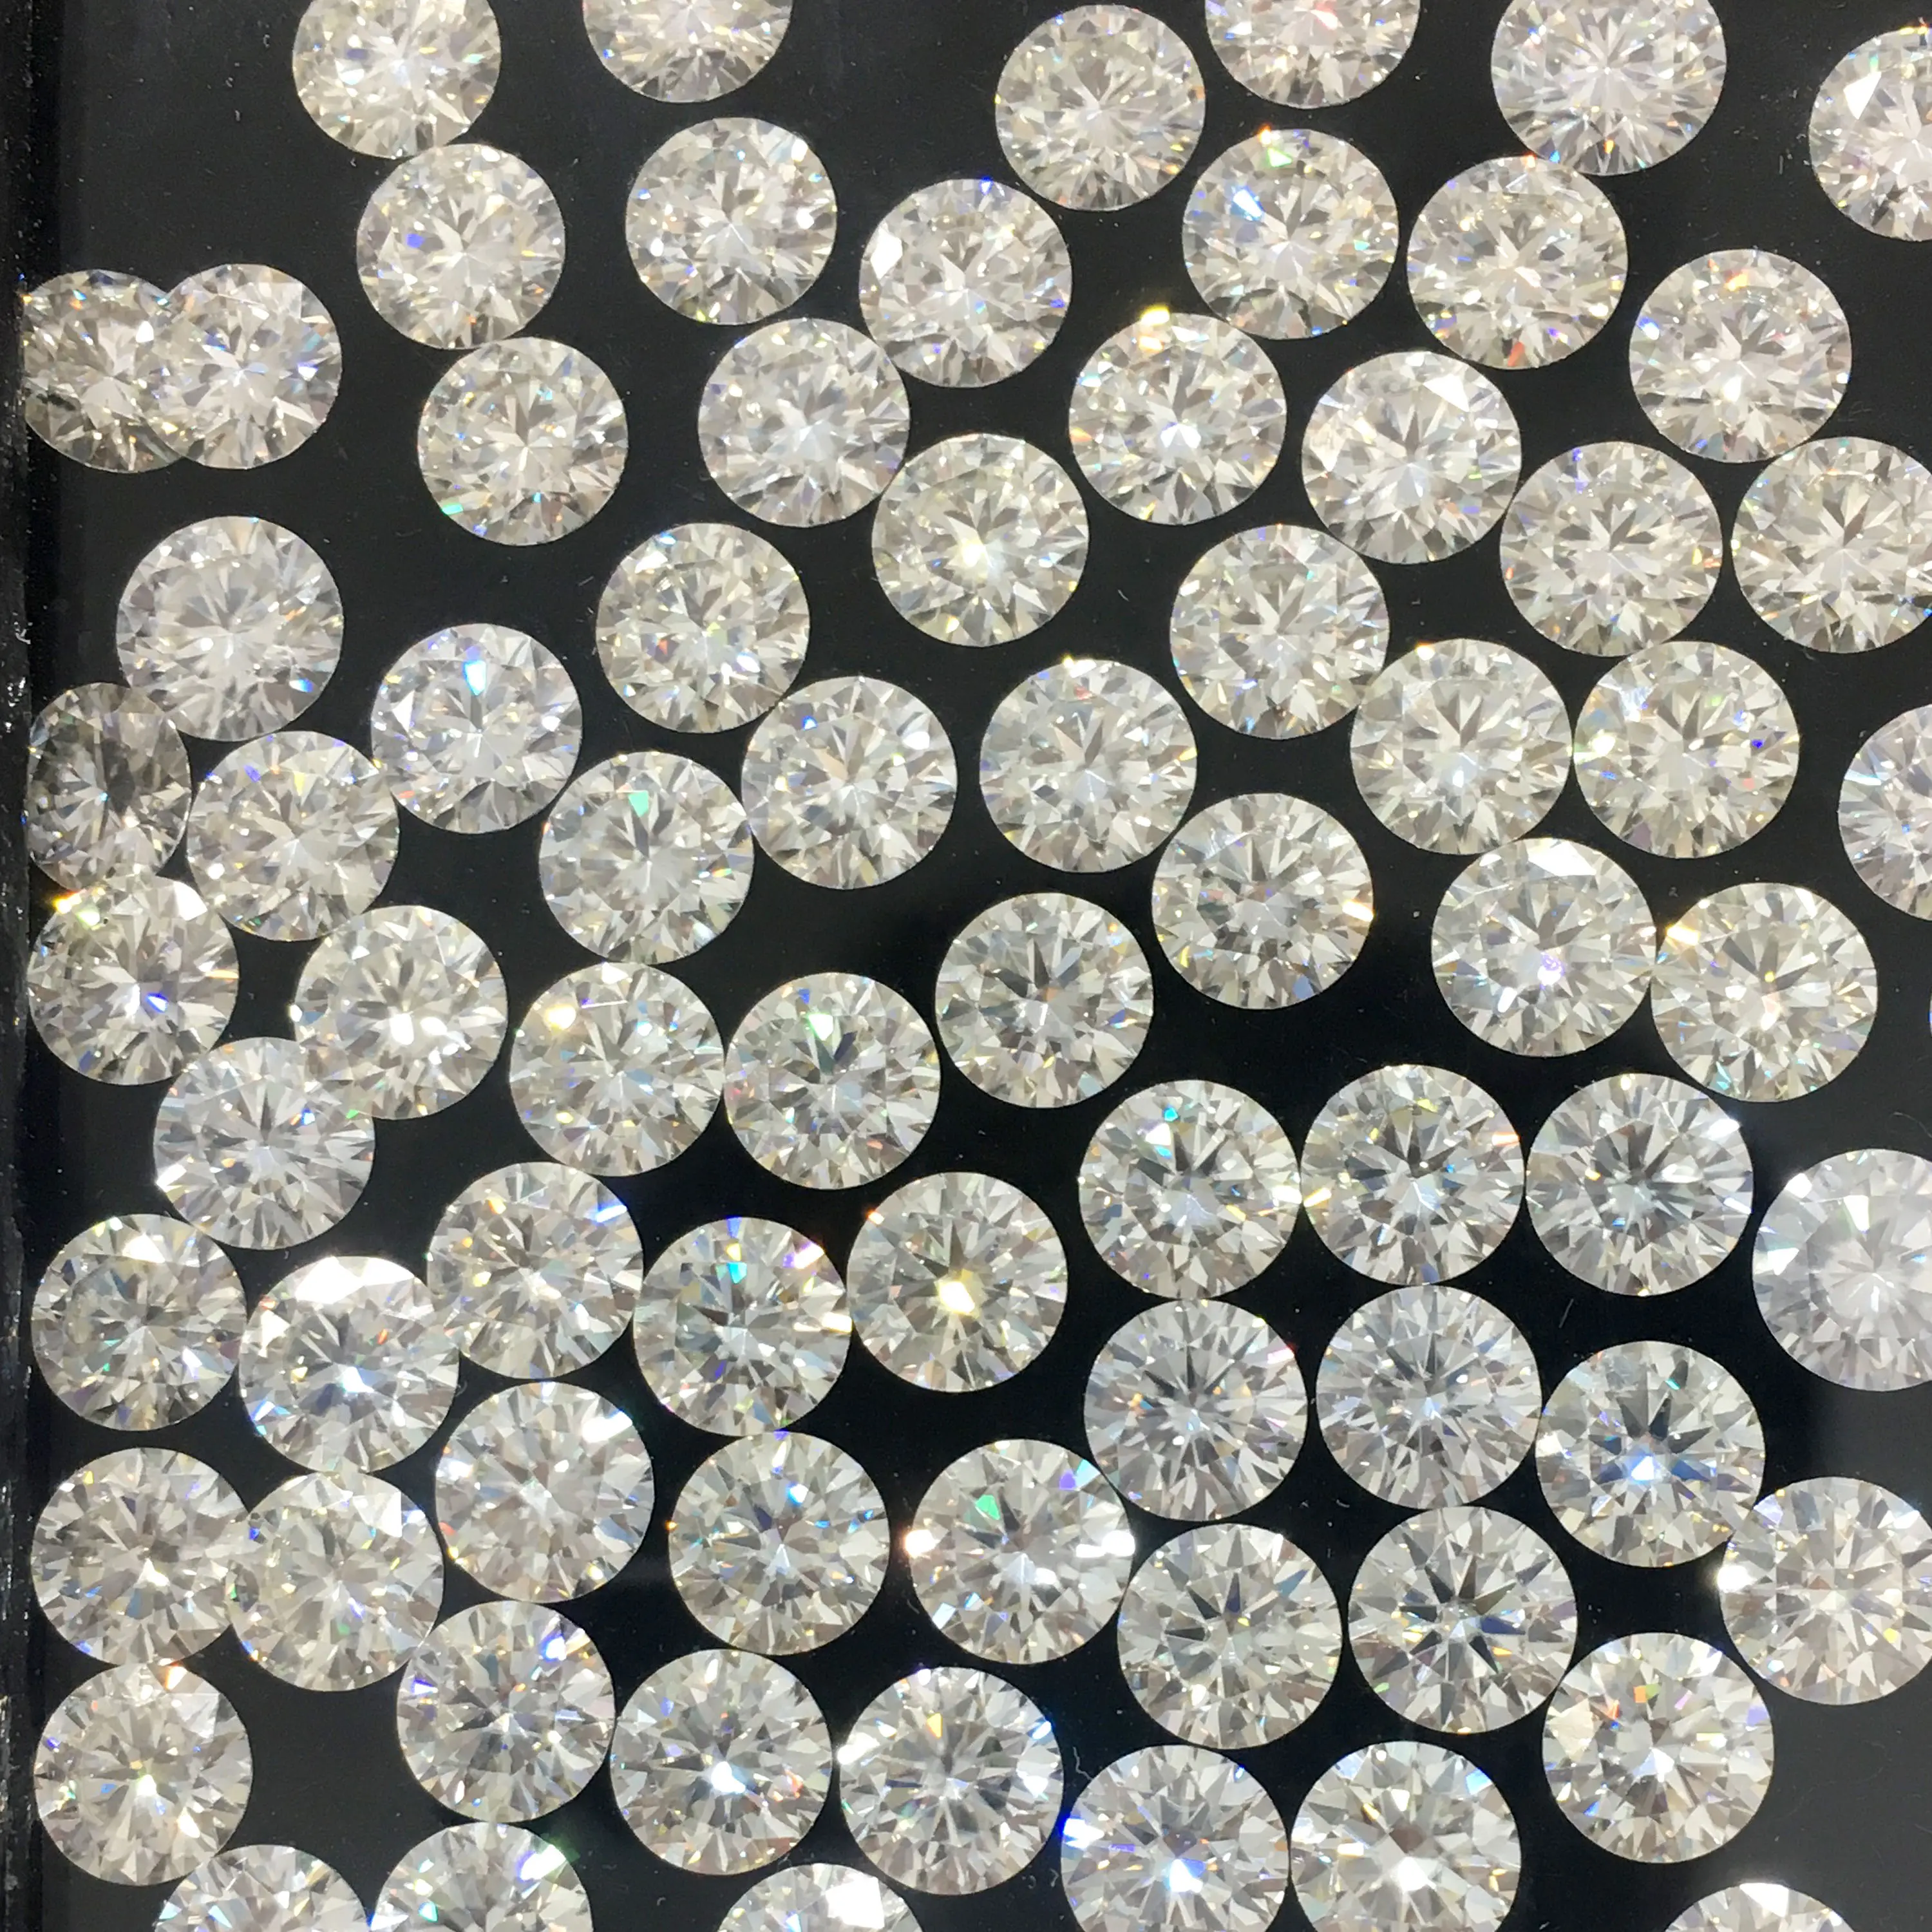 モアッサナイト宝石用原石ラウンドブリリアントカットルースダイヤモンドモアッサナイトストーンサイズ3mm-12mm